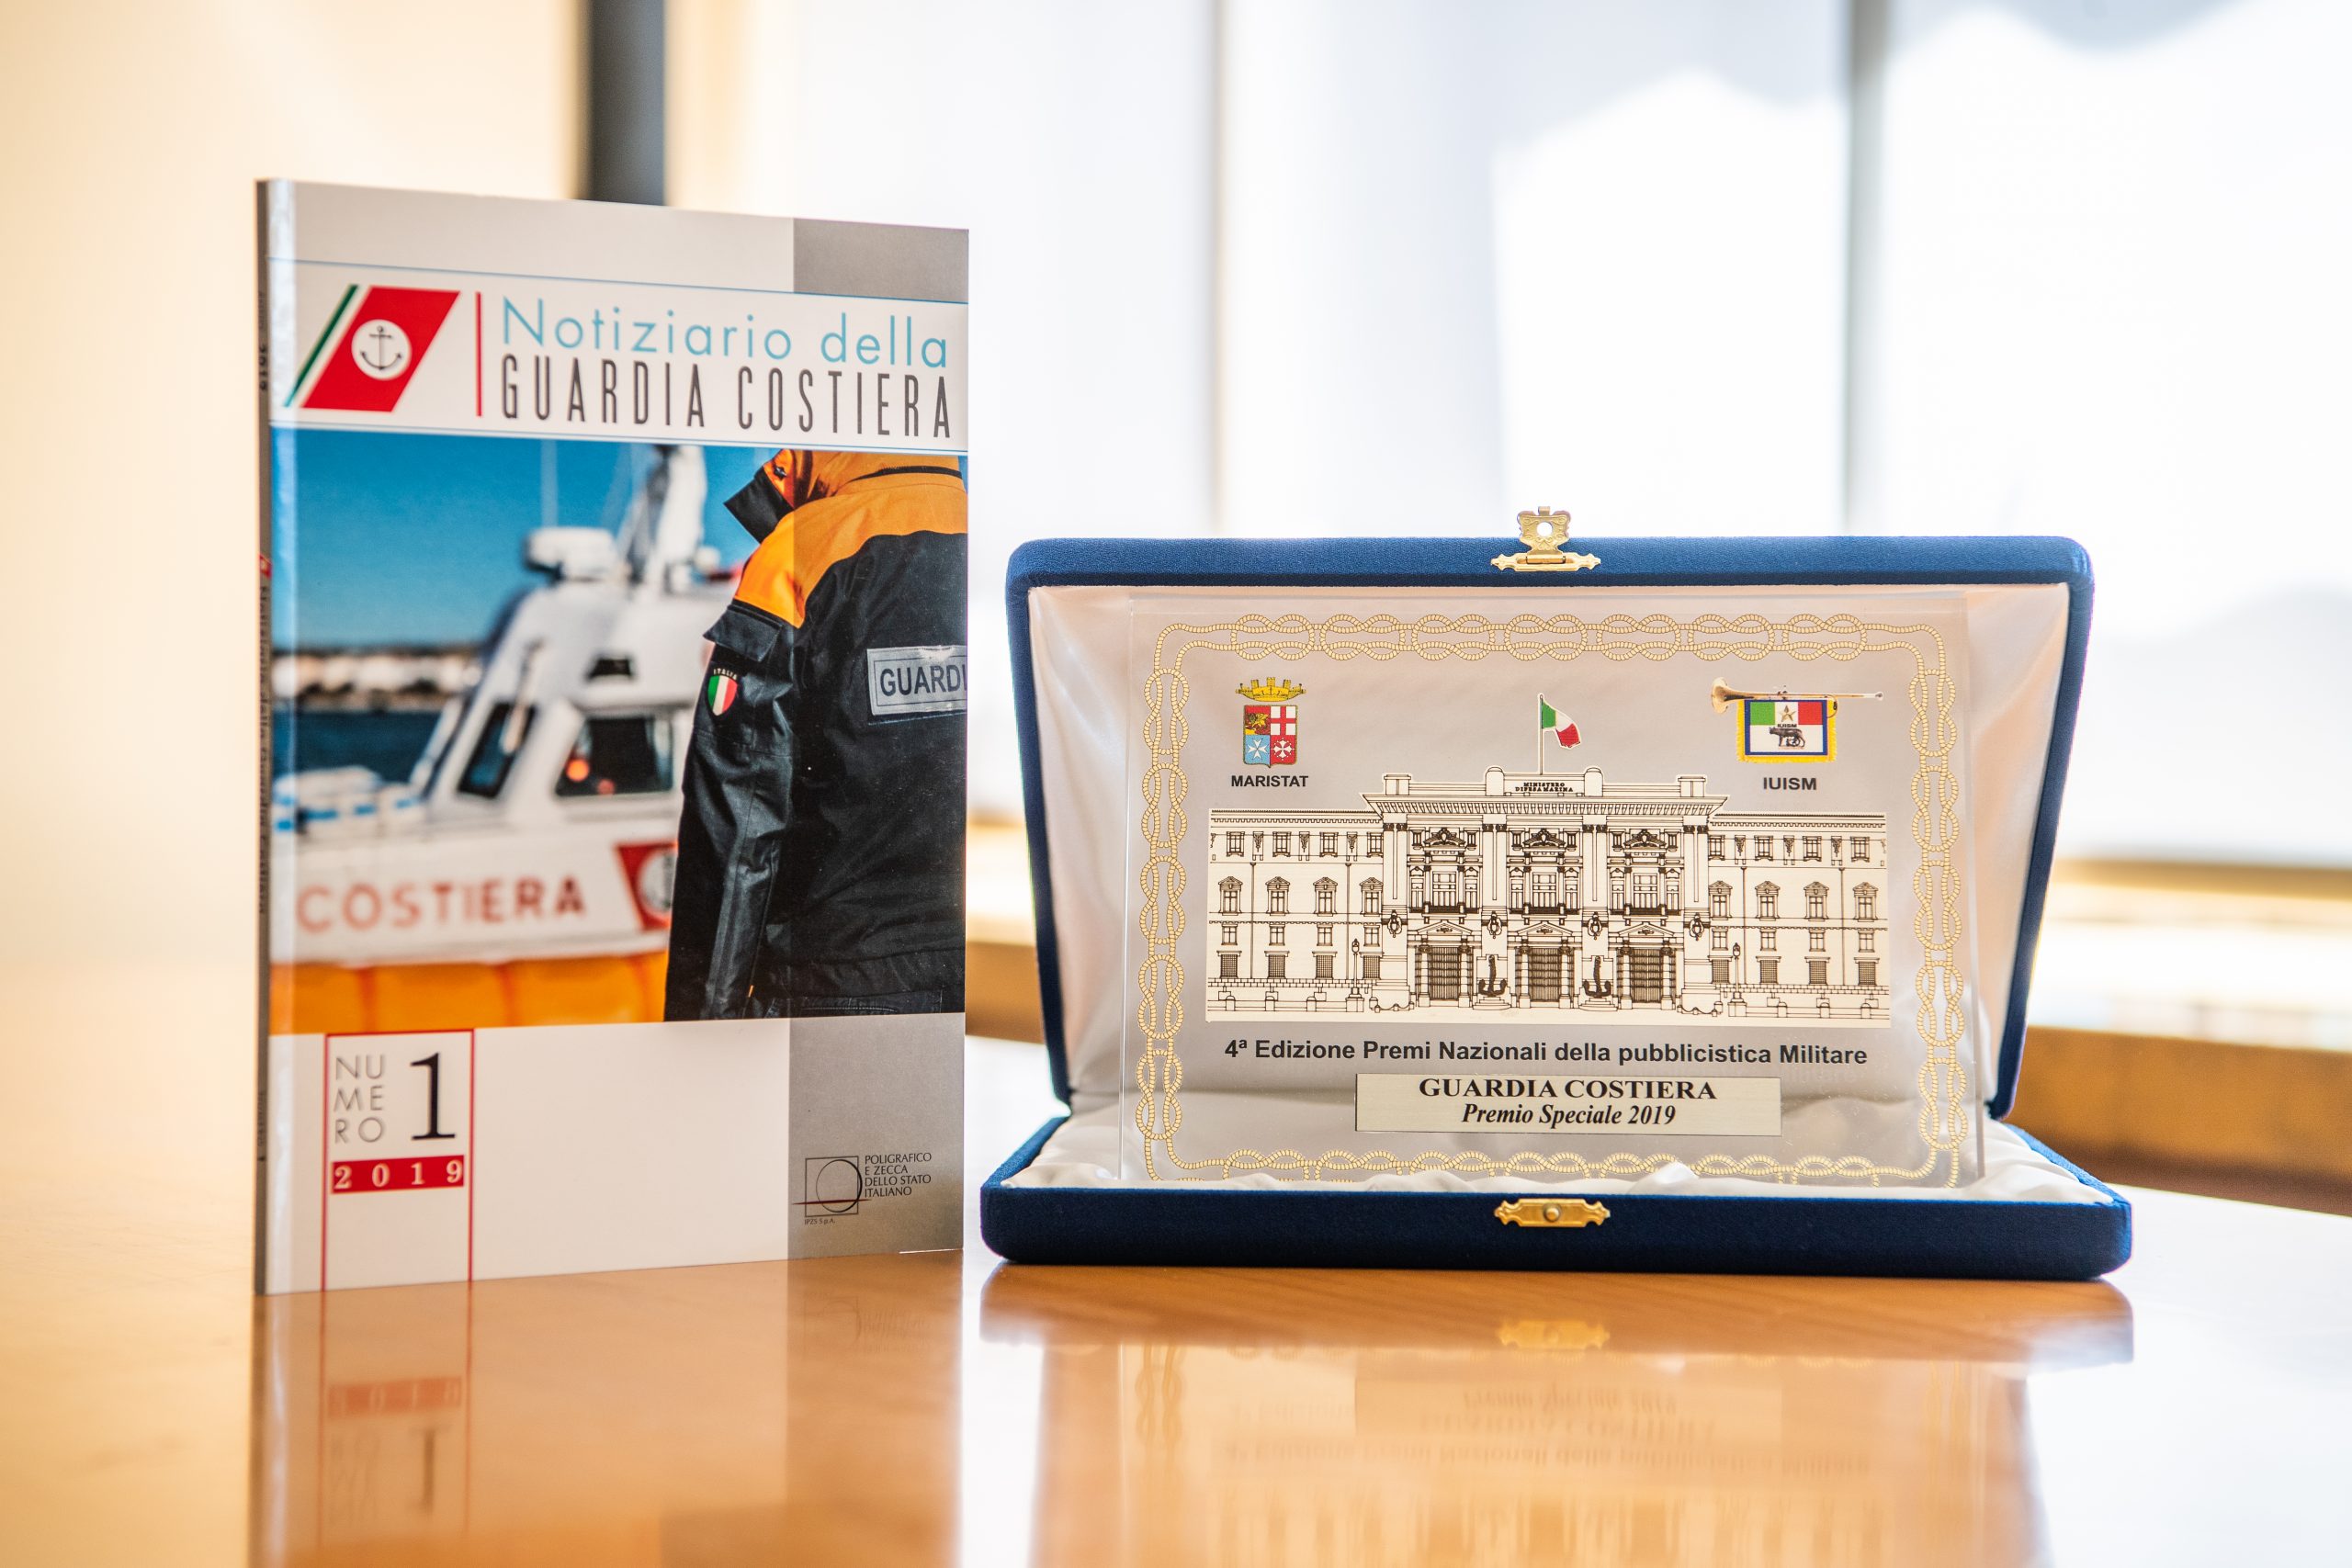 Guardia Costiera: premio speciale "Periodici – Ministeri/Difesa", la foto del premio, una targa.